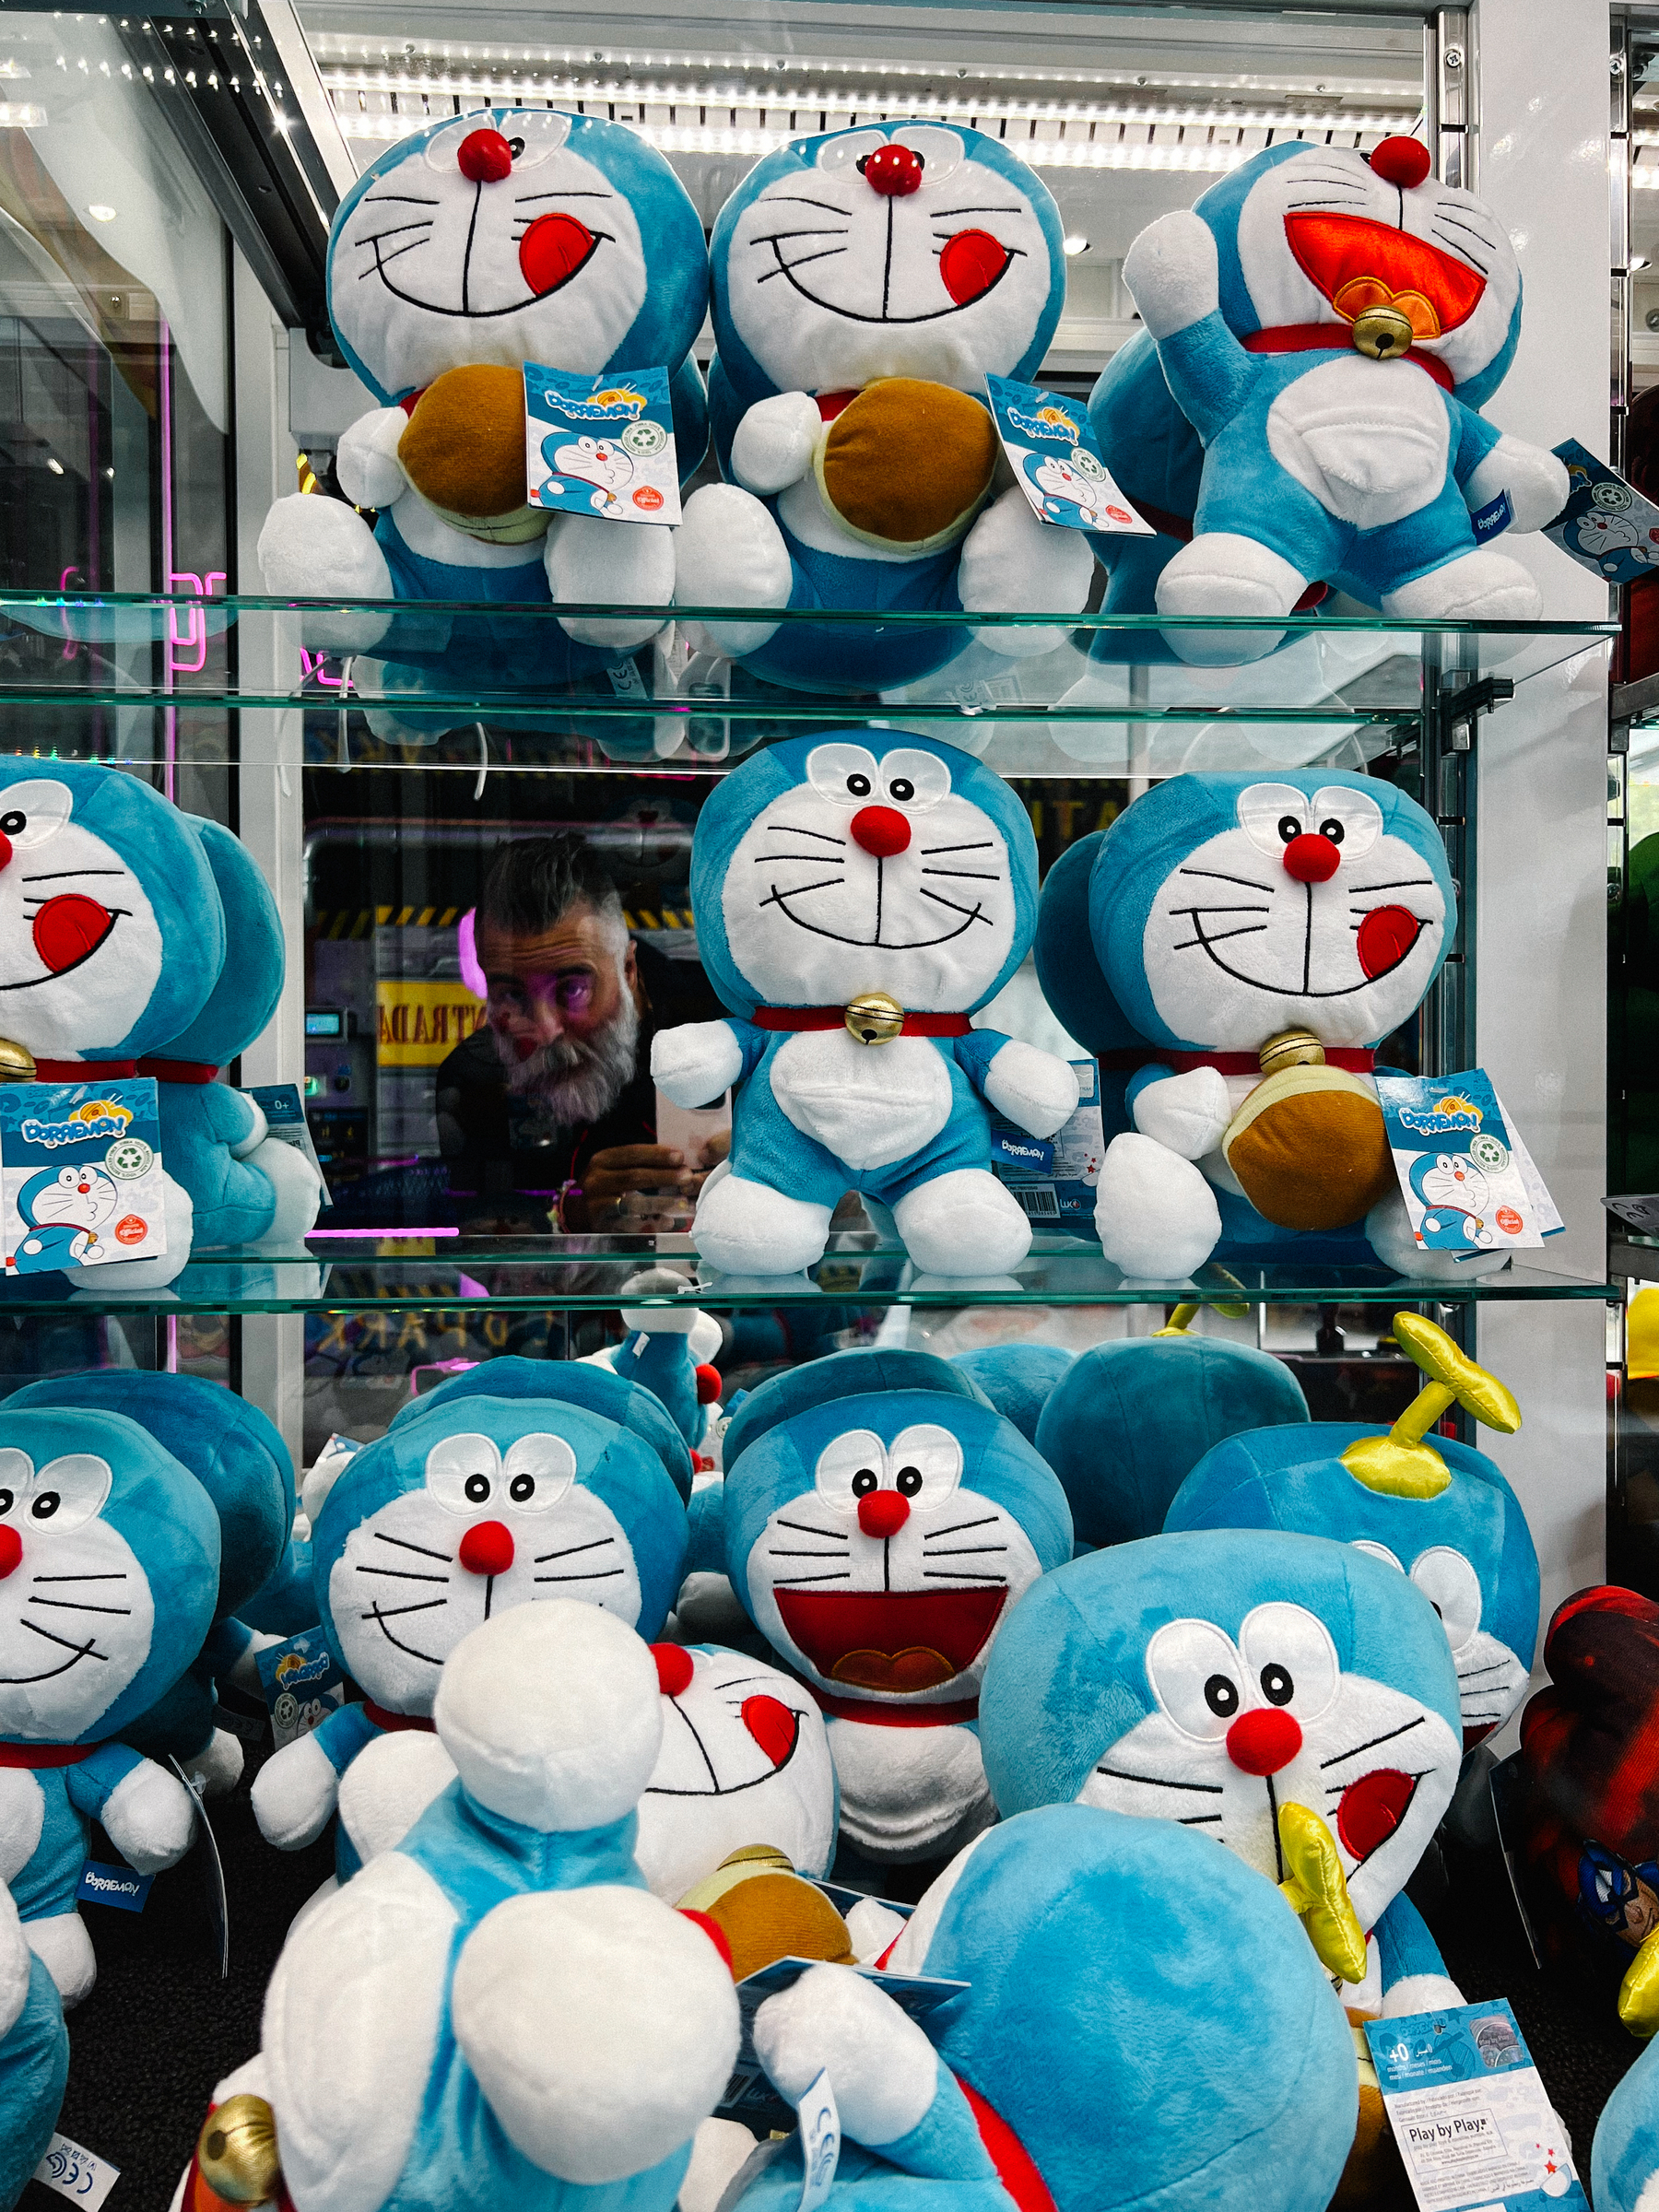 Doraemon plush toys. 